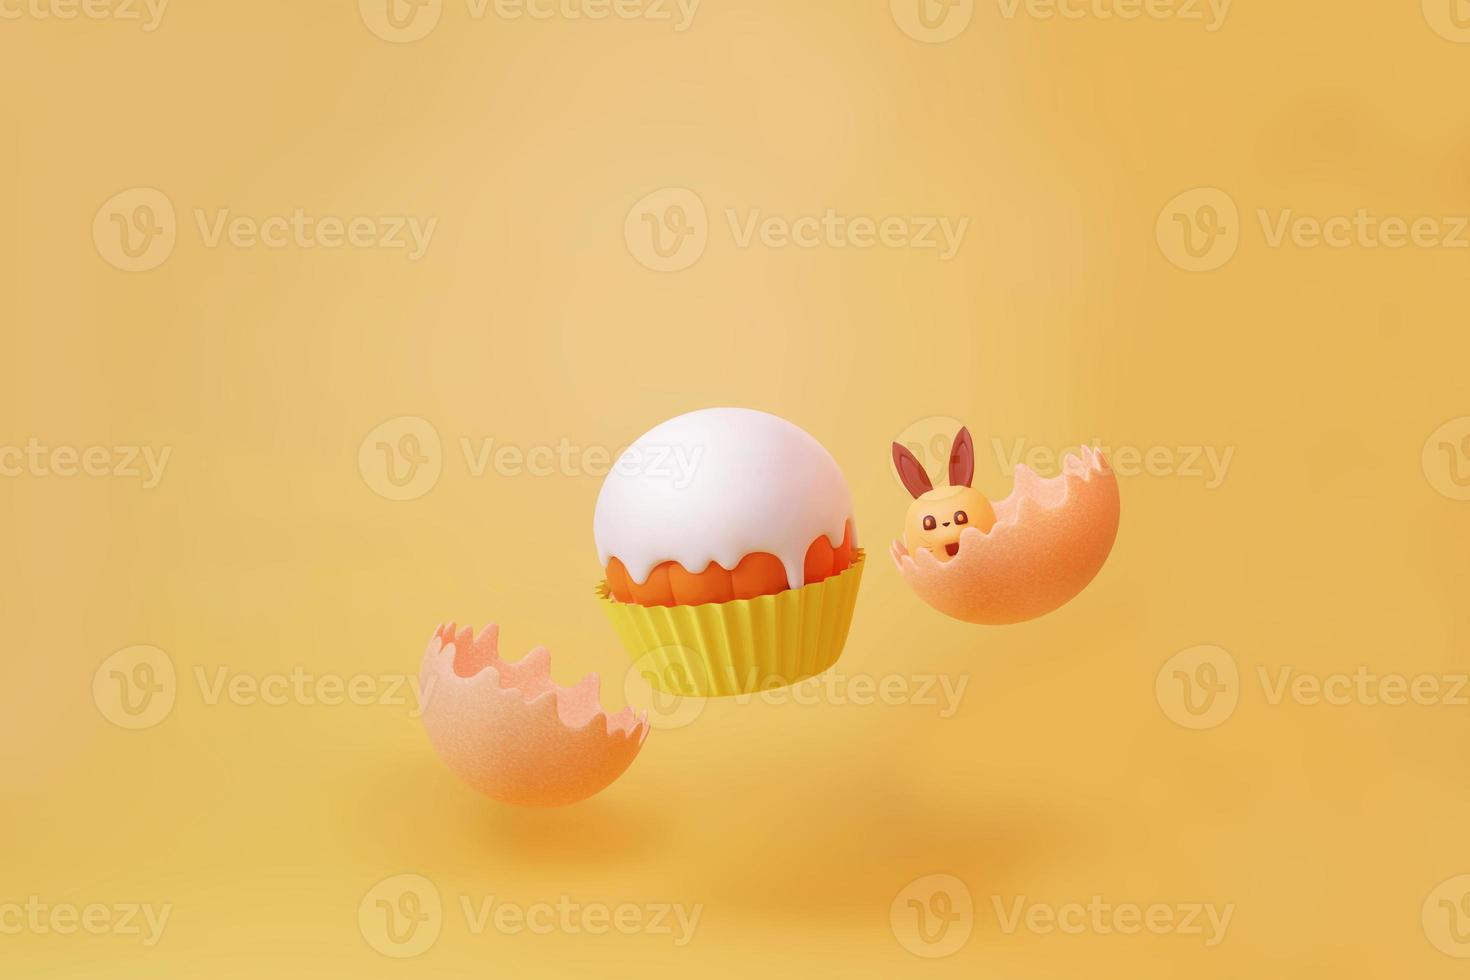 pastelito volador y conejo bebé roto del huevo para el día del huevo de pascua y celebración ilustración 3d foto